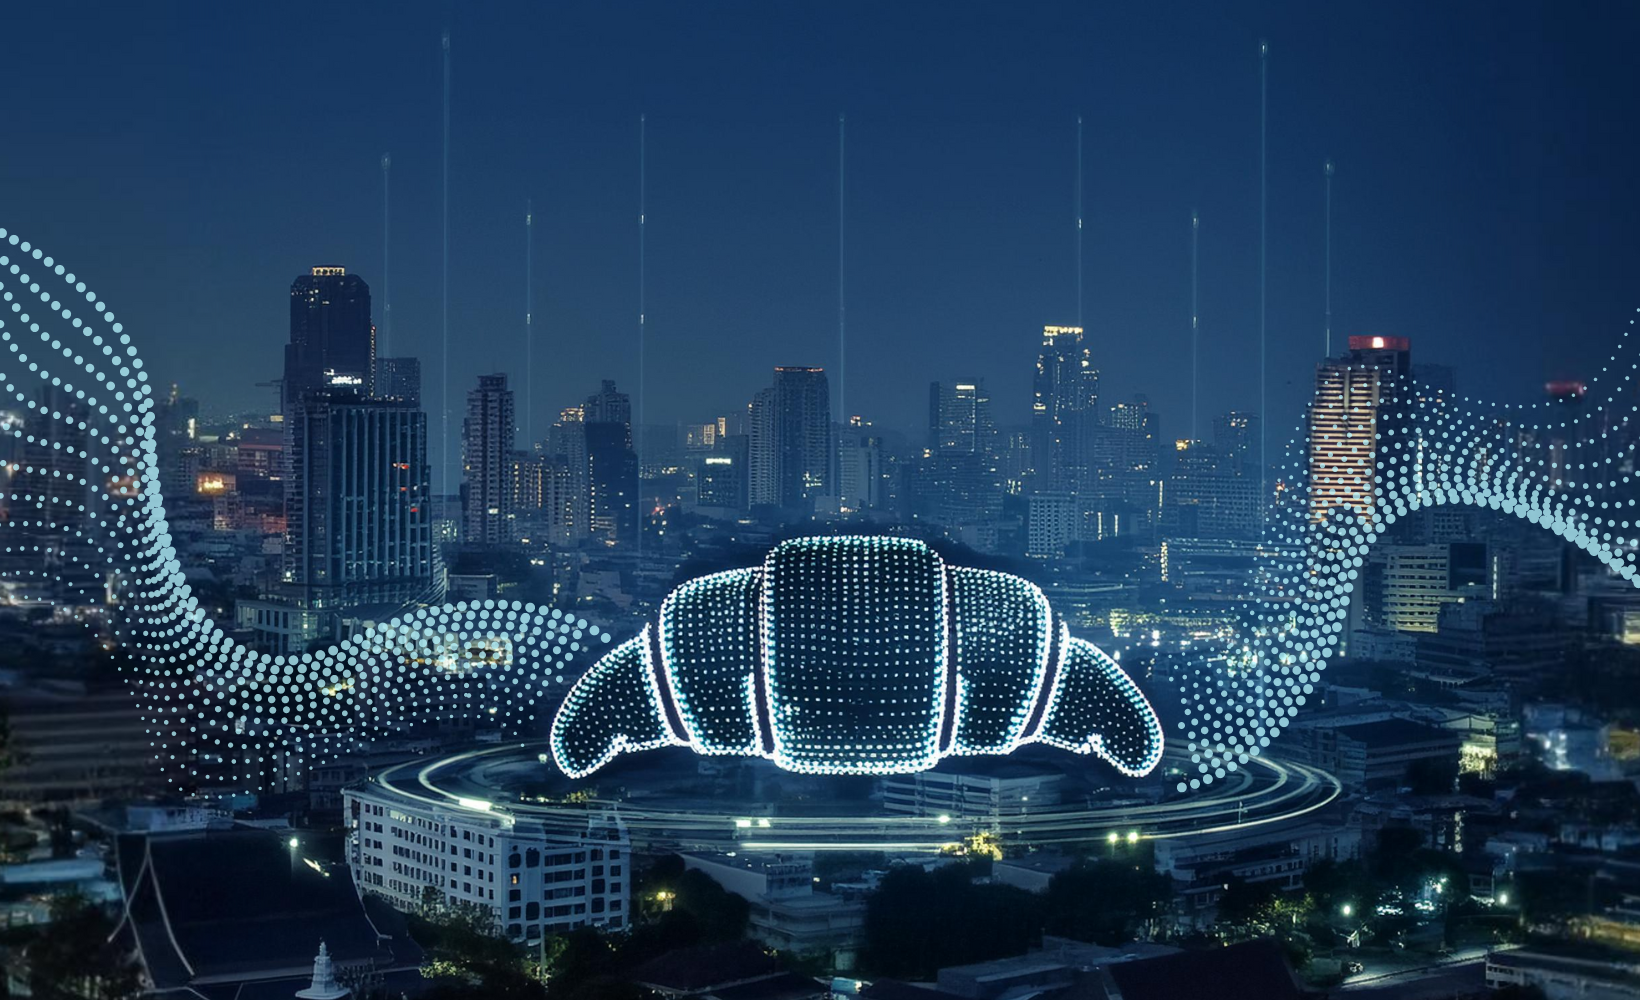 Ein technisch stilisiertes digitales Crosissant vor einer Großstadt bei Nacht, symbolisch für das Thema Smart City